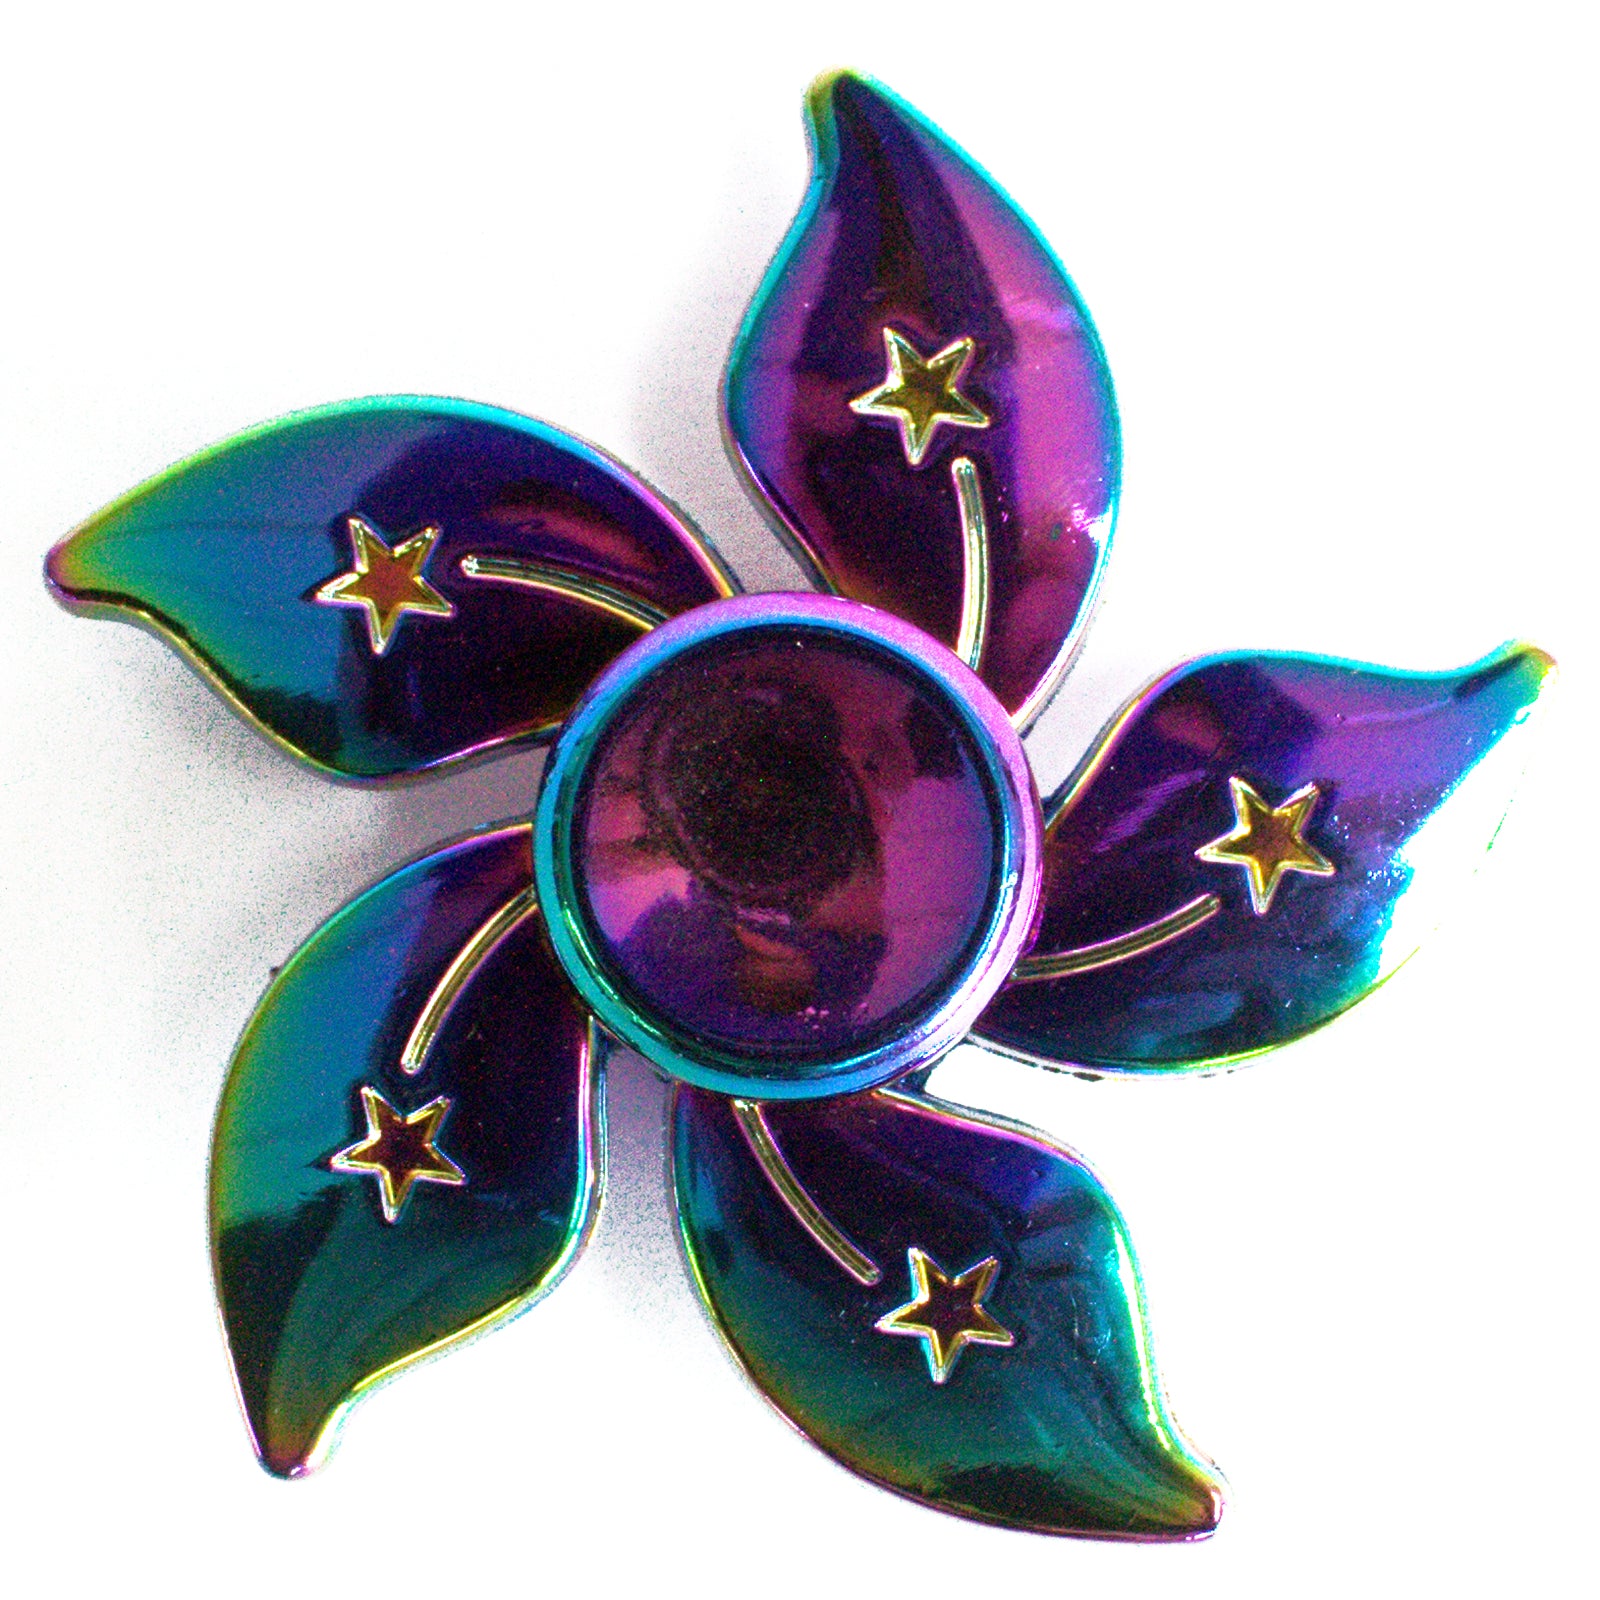 flower fidget spinner